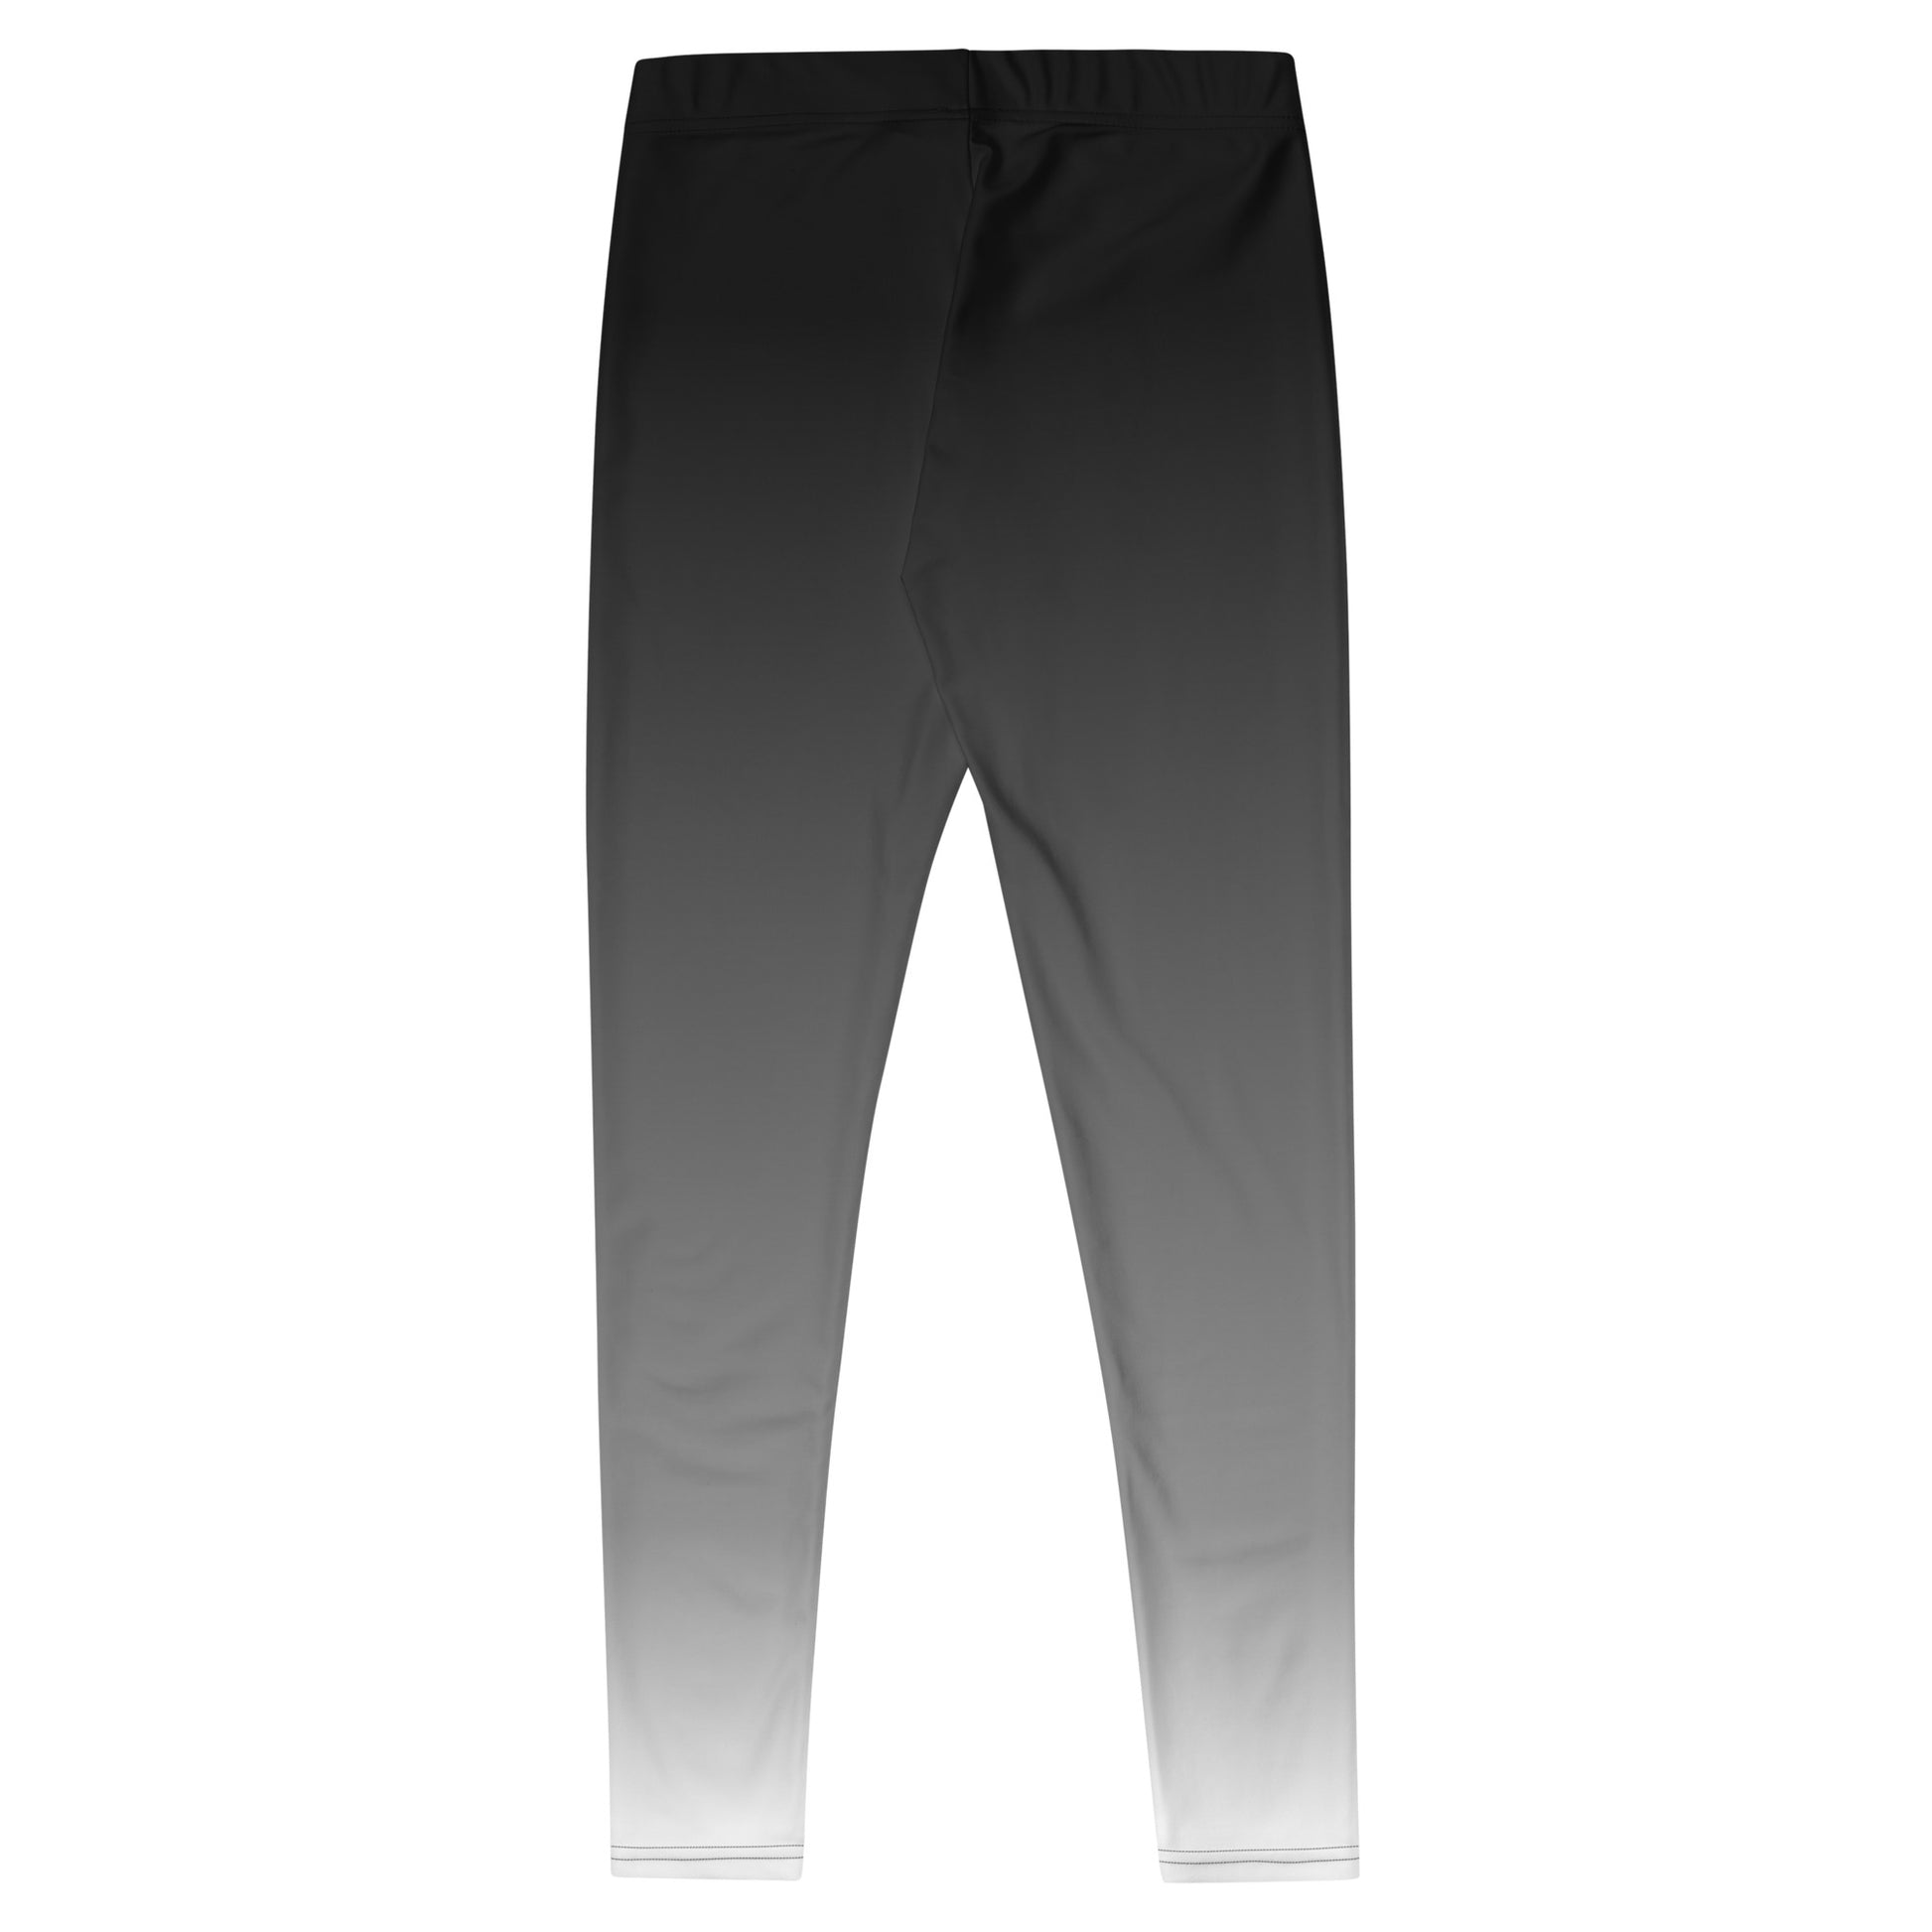 Grey White Ombre Leggings Women, Gradient Tie Dye Black Printed Yoga P –  Starcove Fashion